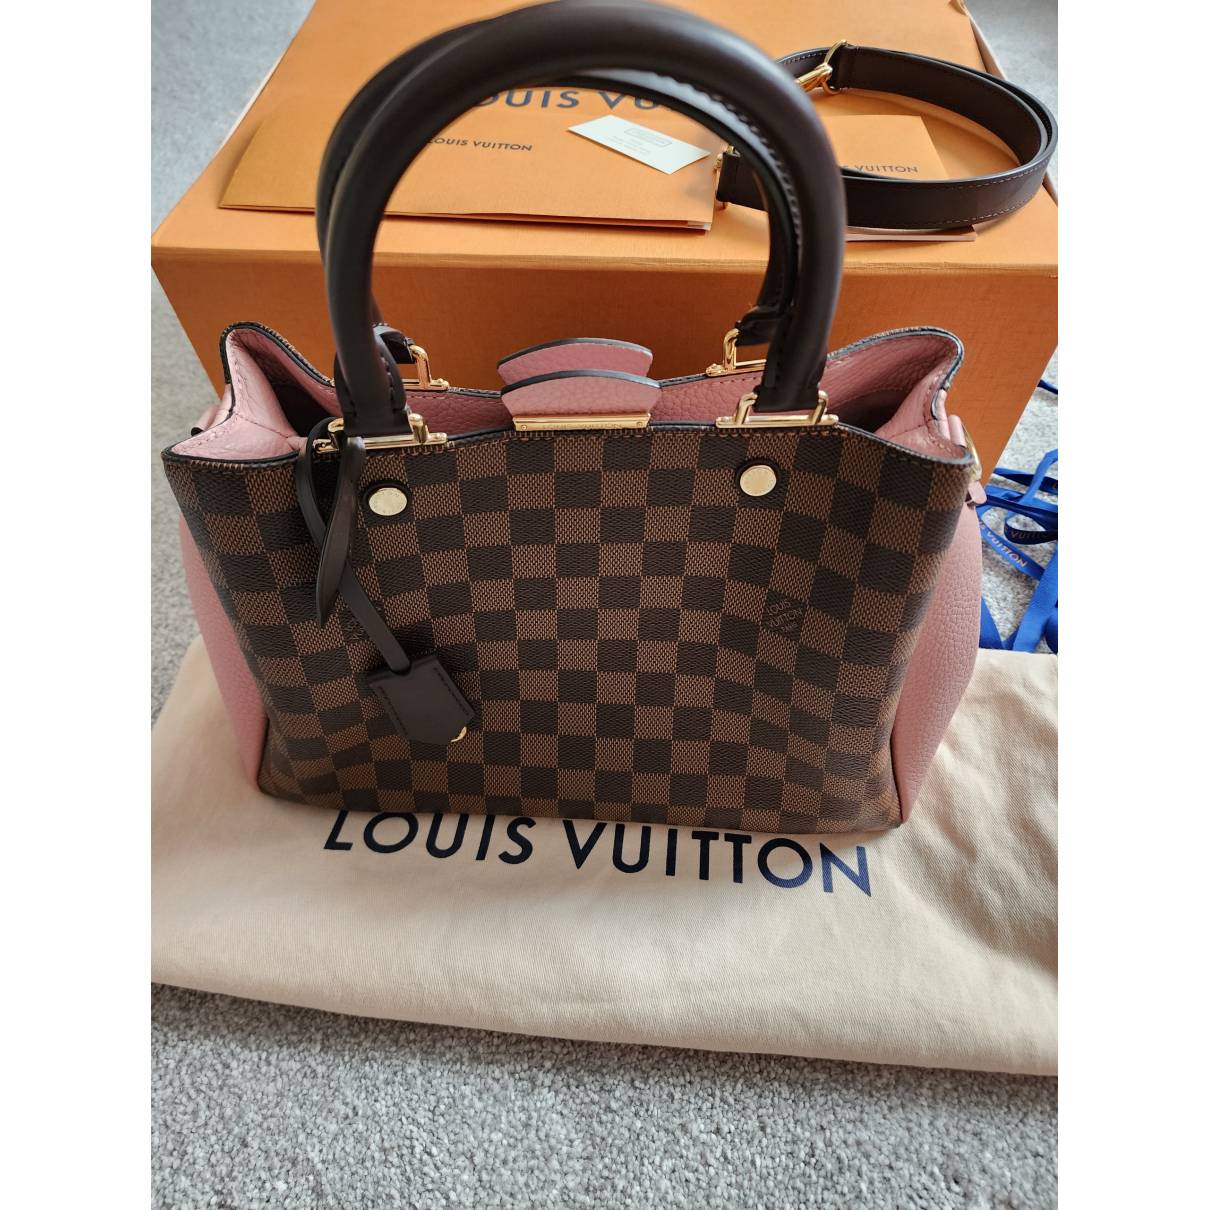 Louis Vuitton, Bags, Louis Vuitton Brittany